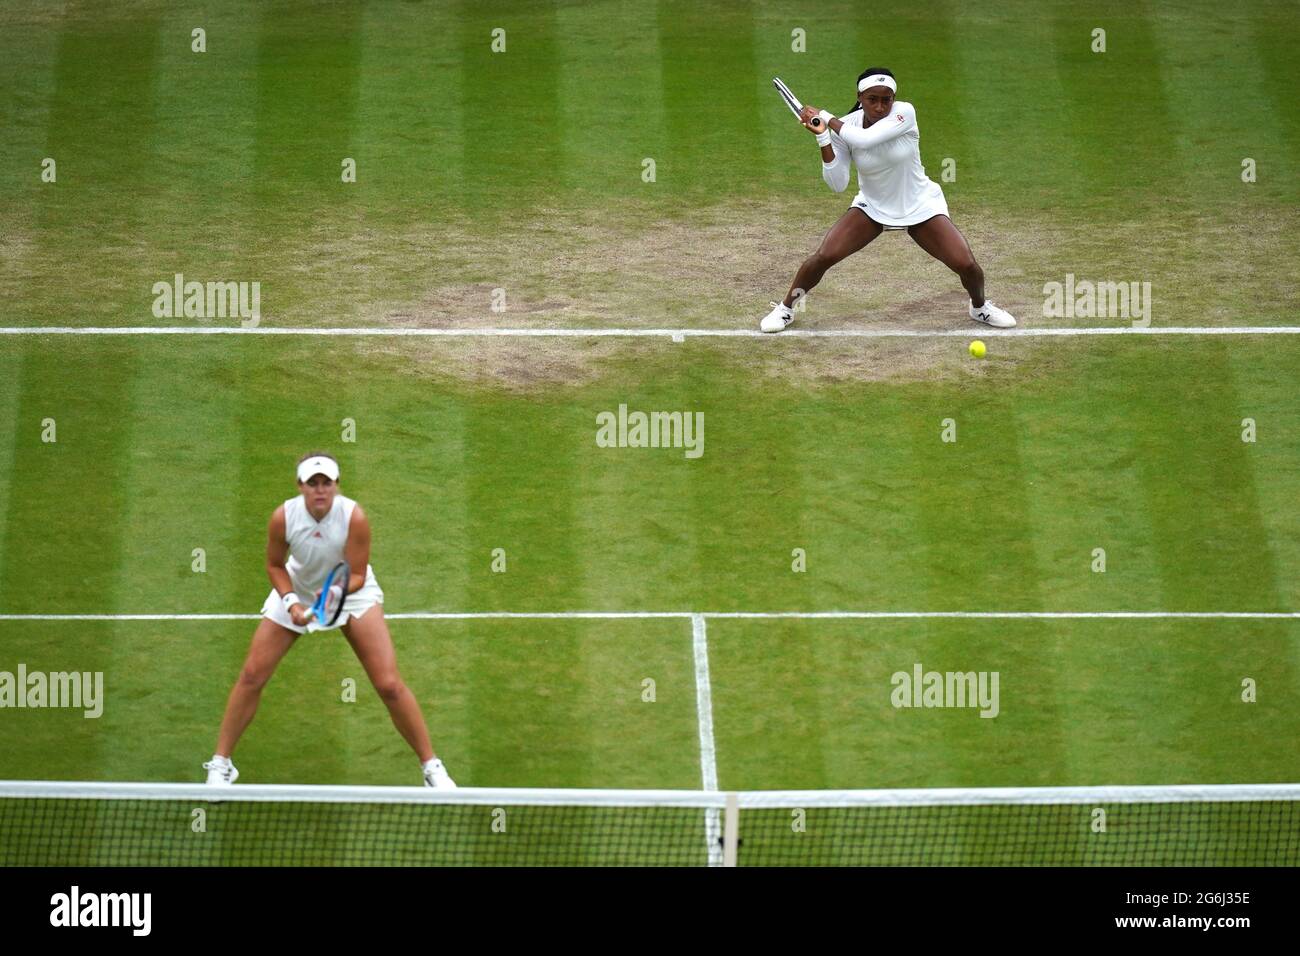 Coco Gauff (rechts) und Caty McNally in Aktion während ihres Doppelmatches der Damen in der dritten Runde gegen Veronika Kudermetova und Elena Vesnina am achten Tag von Wimbledon im All England Lawn Tennis and Croquet Club in Wimbledon. Bilddatum: Dienstag, 6. Juli 2021. Stockfoto